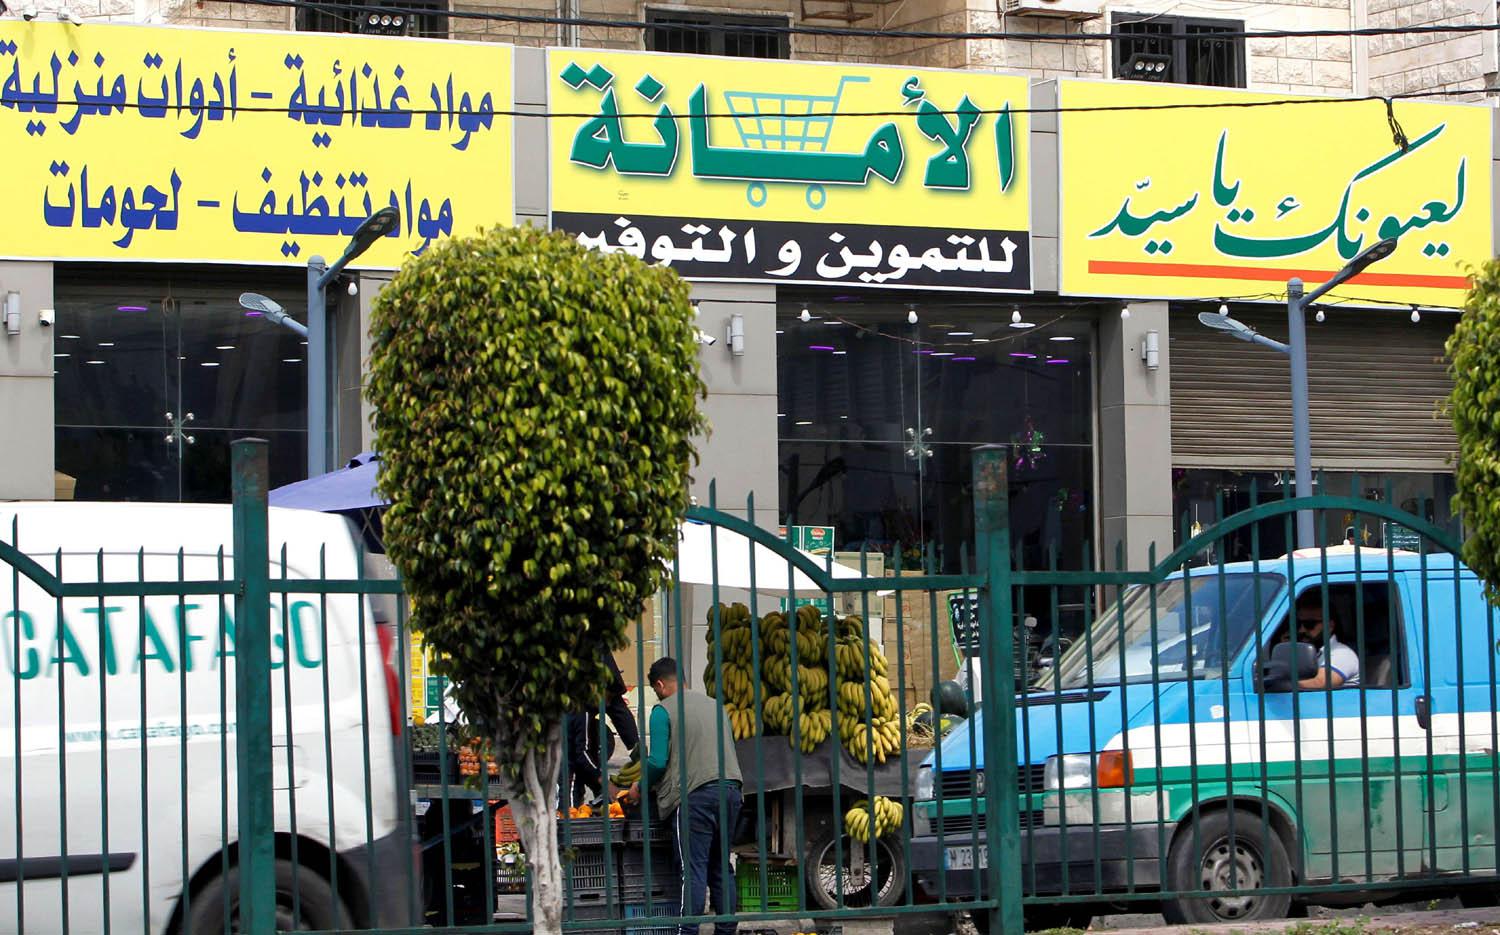 دكان في ضواحي بيروت يرفع شعارات حزب الله